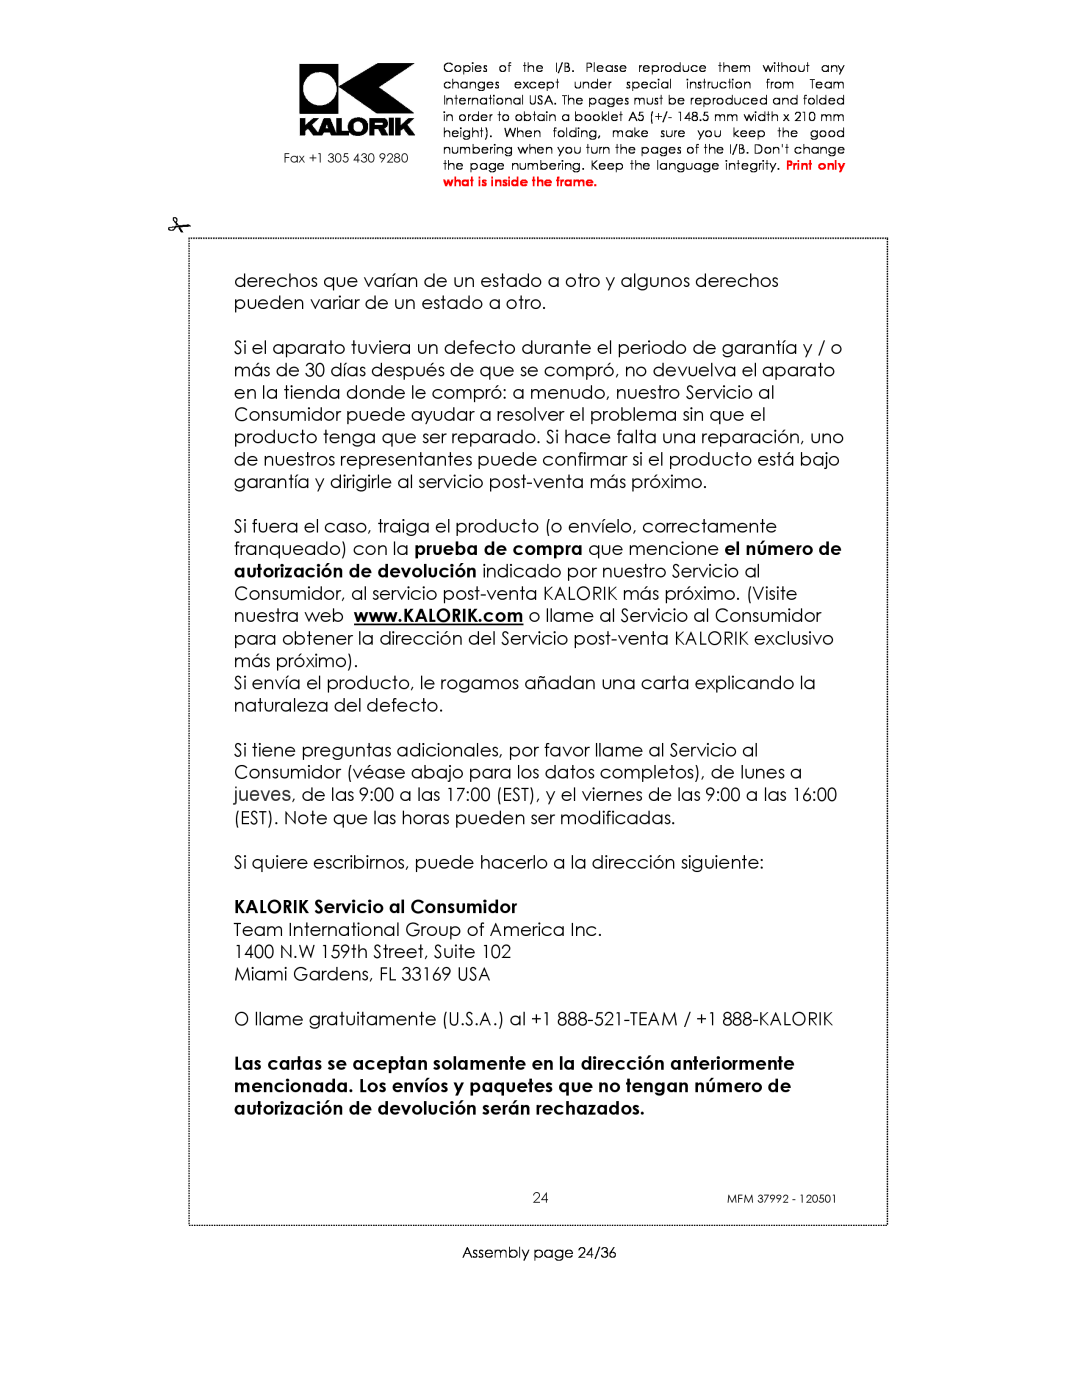 Kalorik MFM 37992 manual KALORIK Servicio al Consumidor 